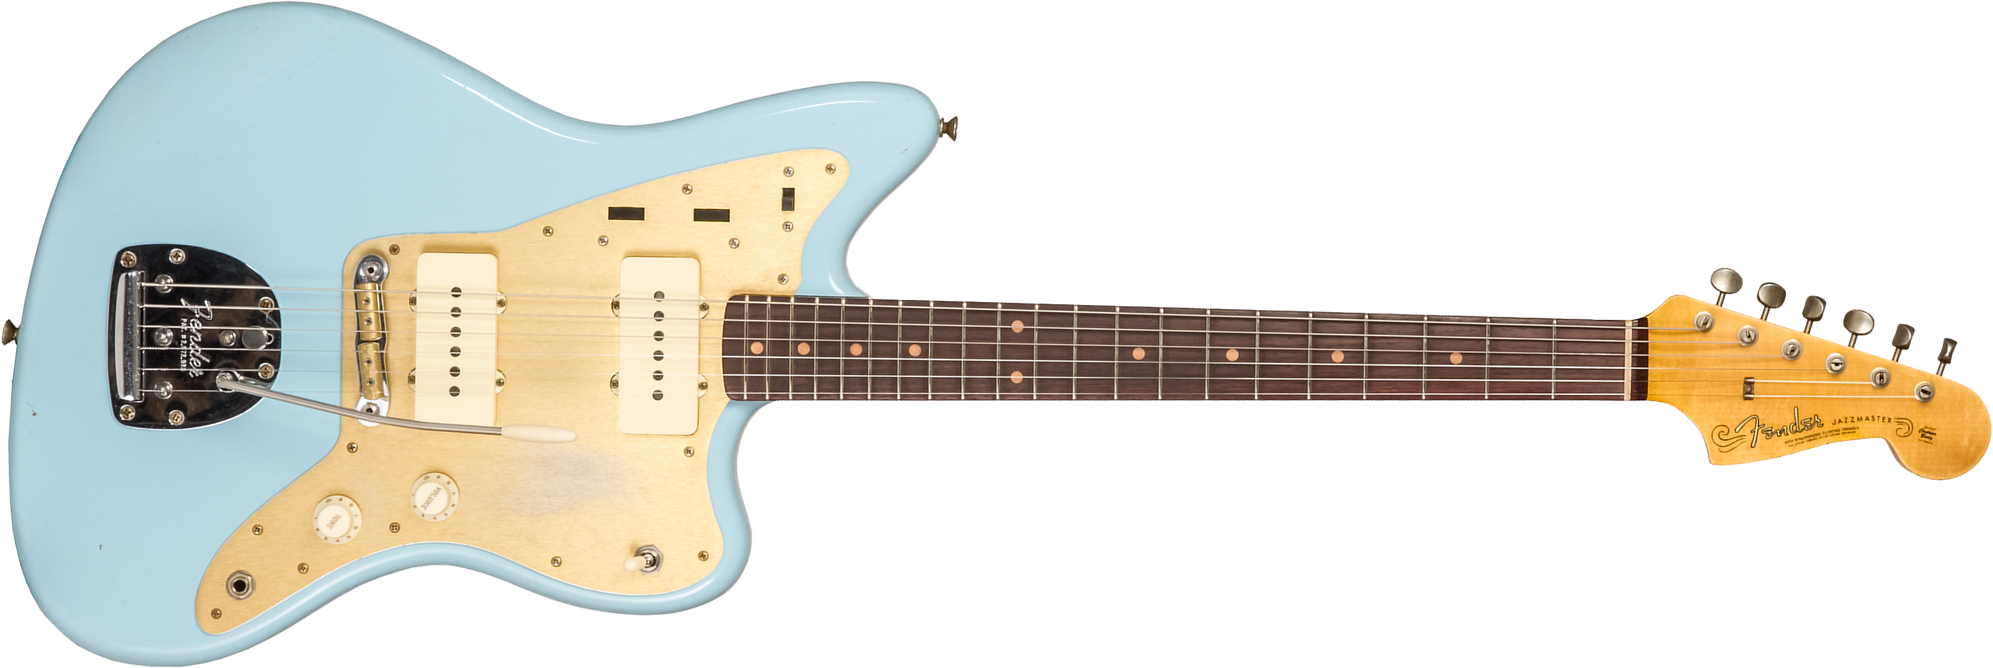 Fender Custom Shop Jazzmaster 1959 250k 2s Trem Rw #cz576203 - Journeyman Relic Aged Daphne Blue - Guitare Électrique RÉtro Rock - Main picture